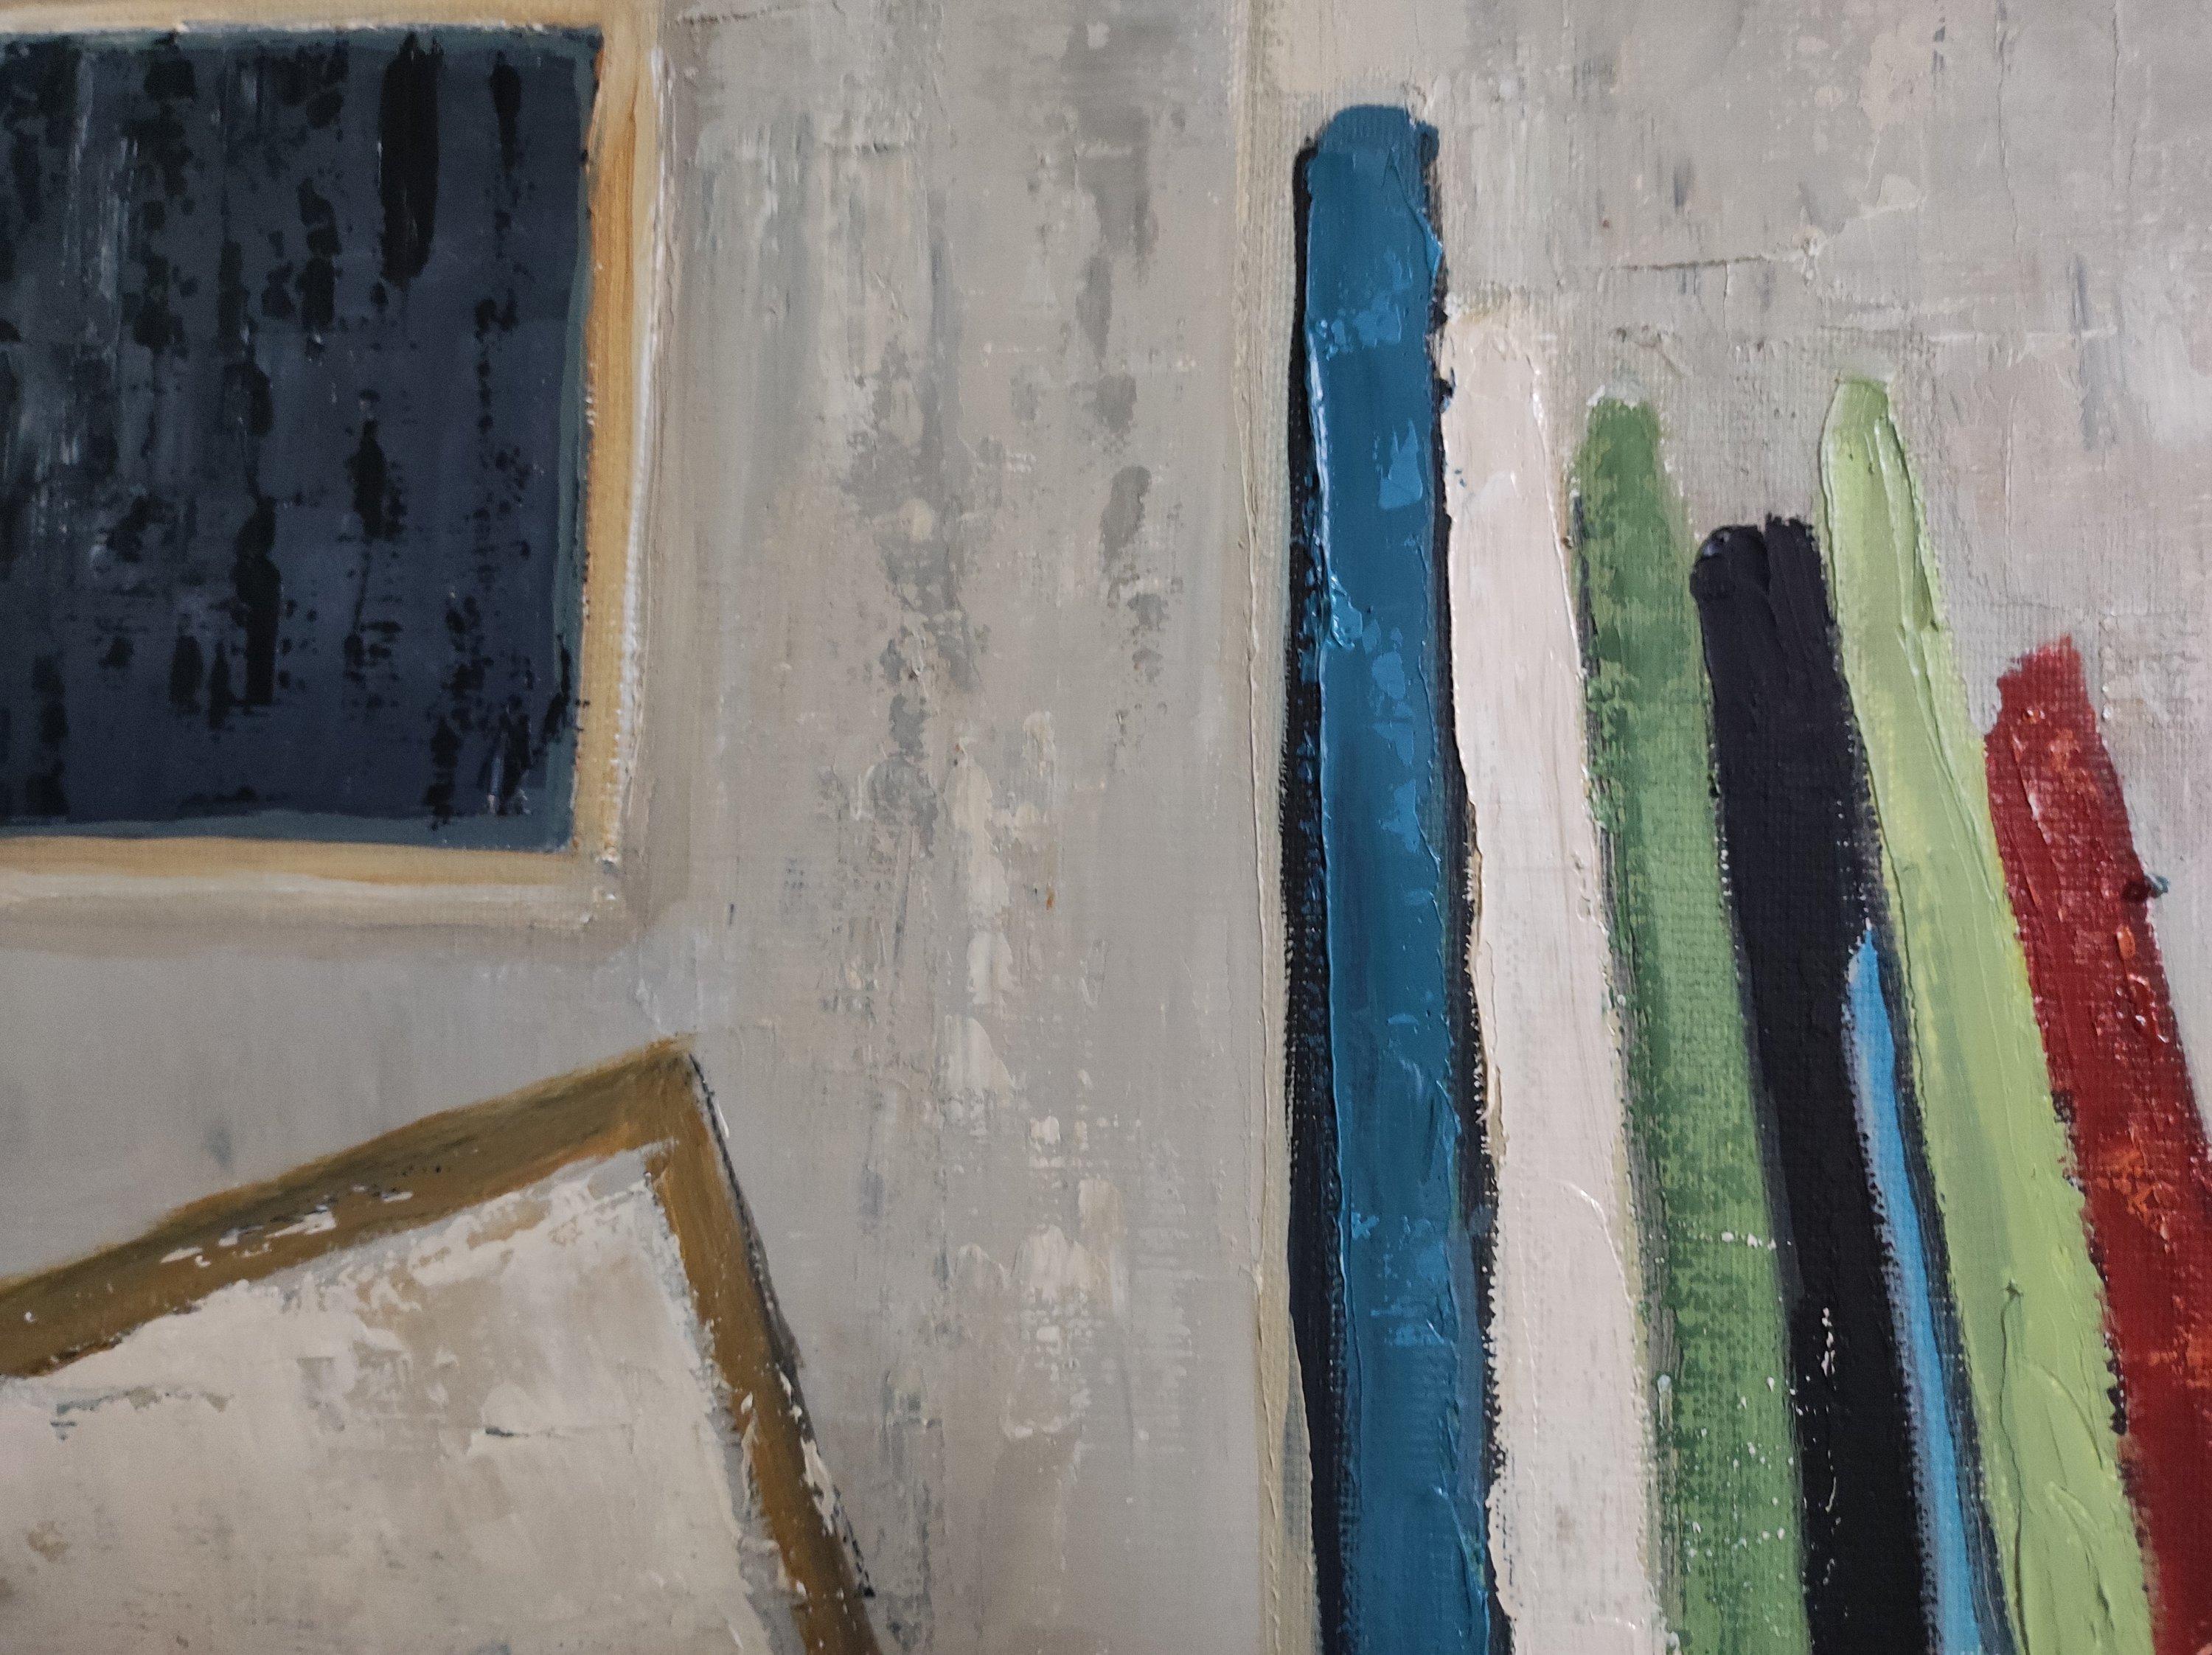 Dans cet atelier pictural, l'artiste propose une symphonie visuelle où la palette de couleurs s'anime avec une dominante de vert et de bleu. Ces teintes créent un mélange harmonieux, plongeant le spectateur dans un océan de nuances. L'utilisation du